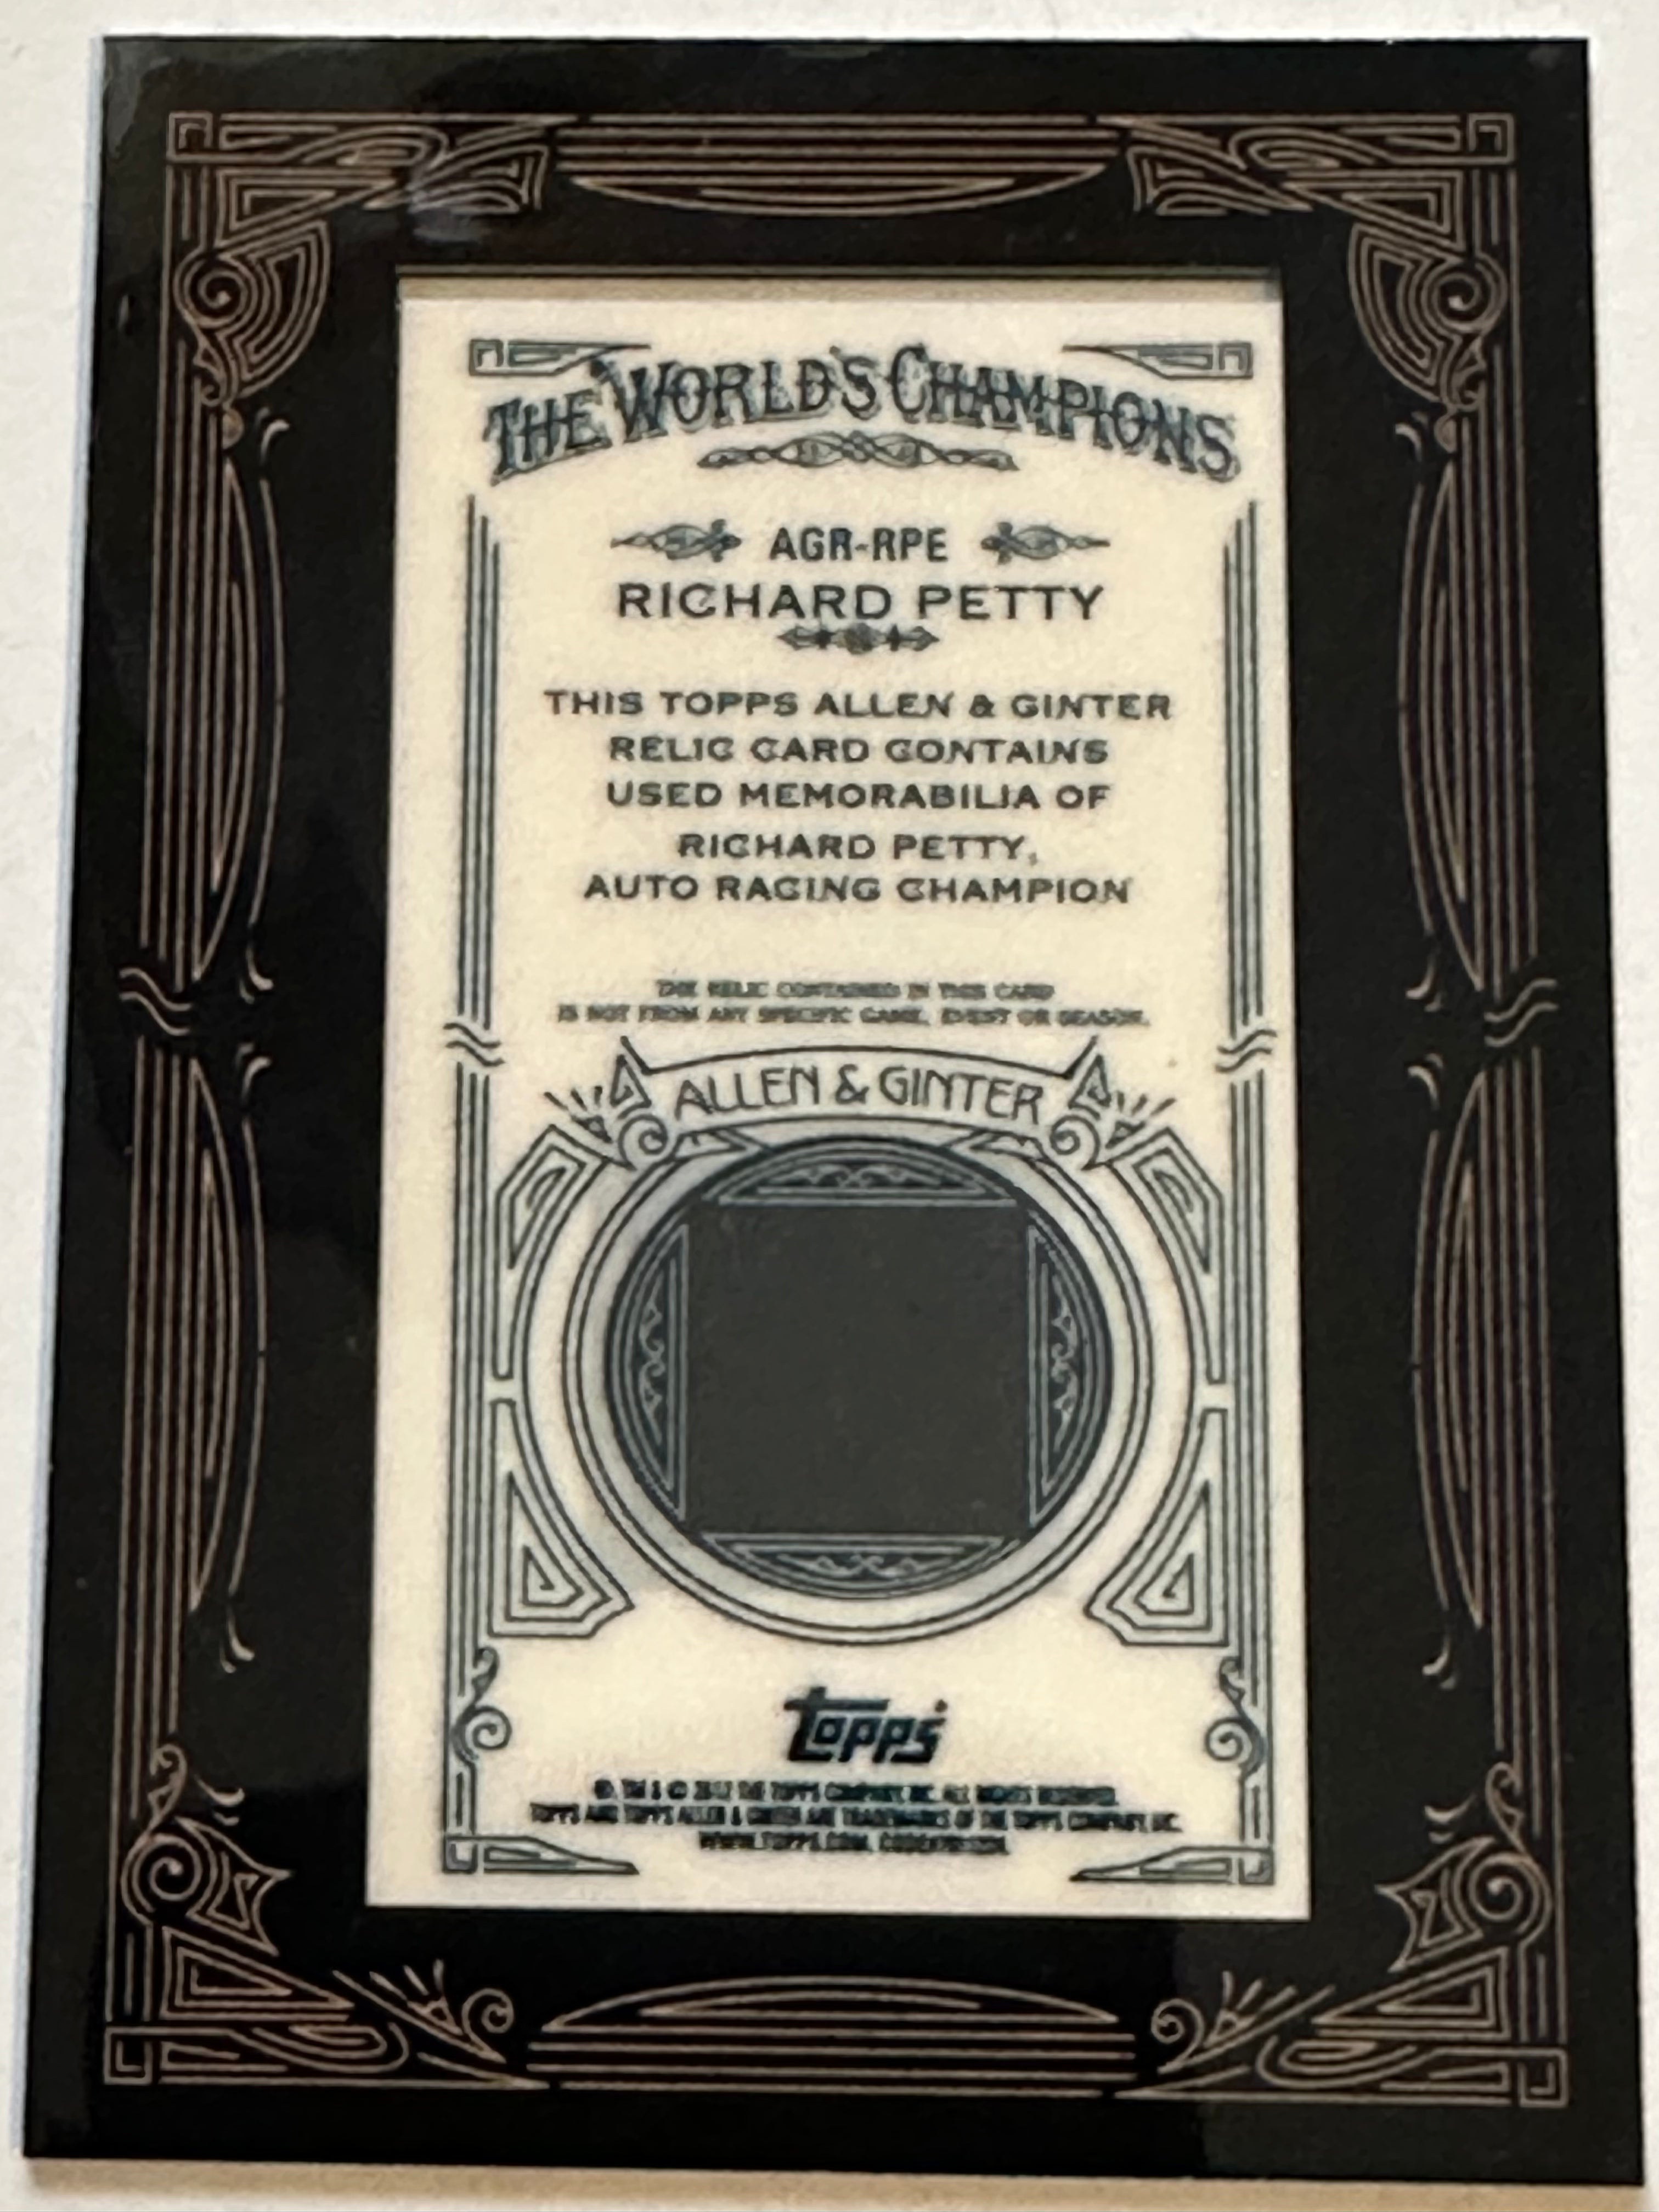 Richard Petty racing rare memorabilia insert card